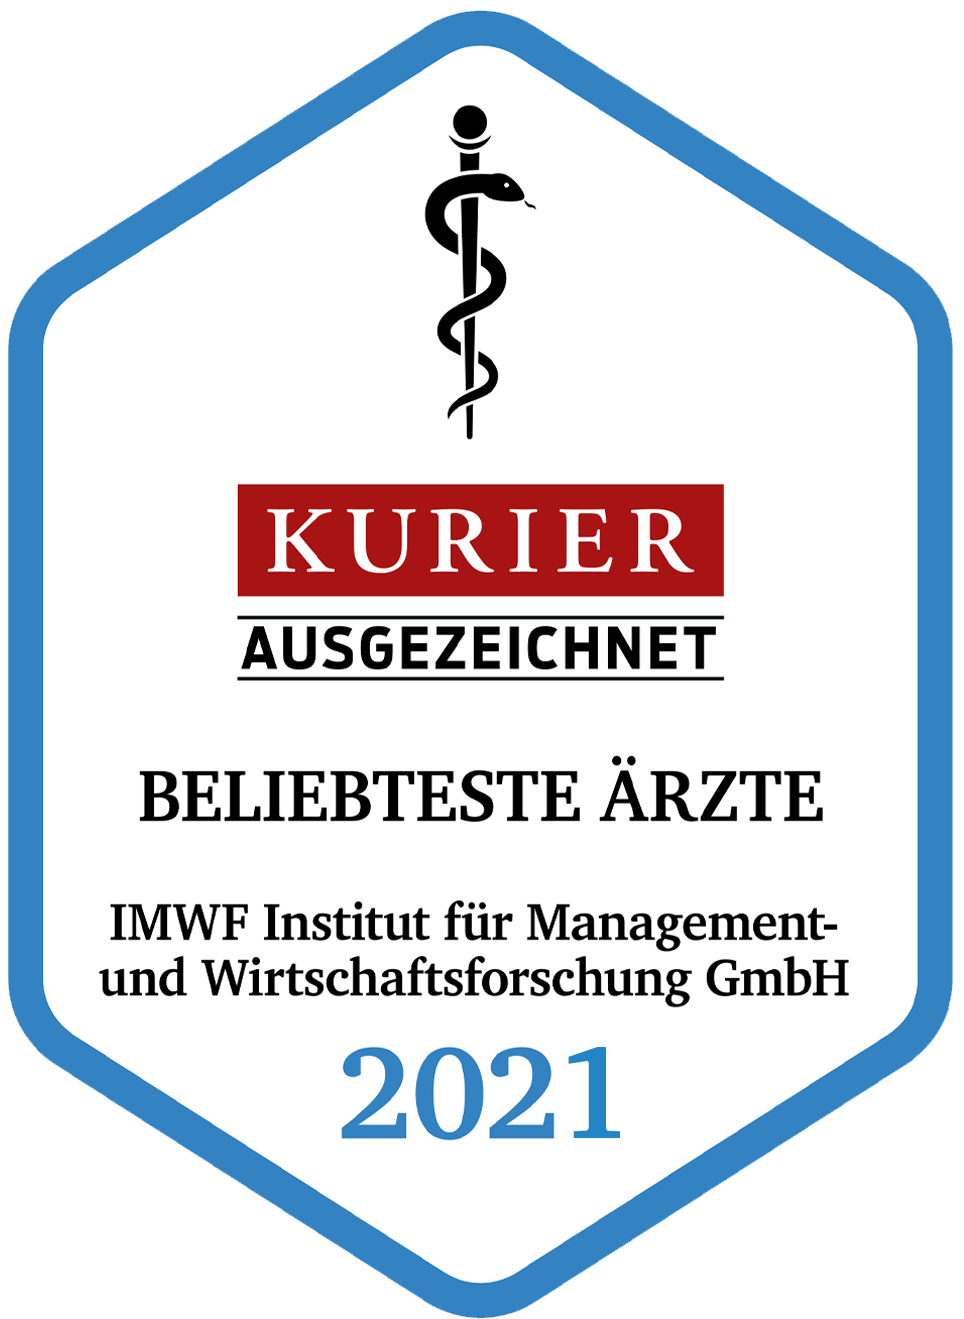 Kurier-Siegel 2020